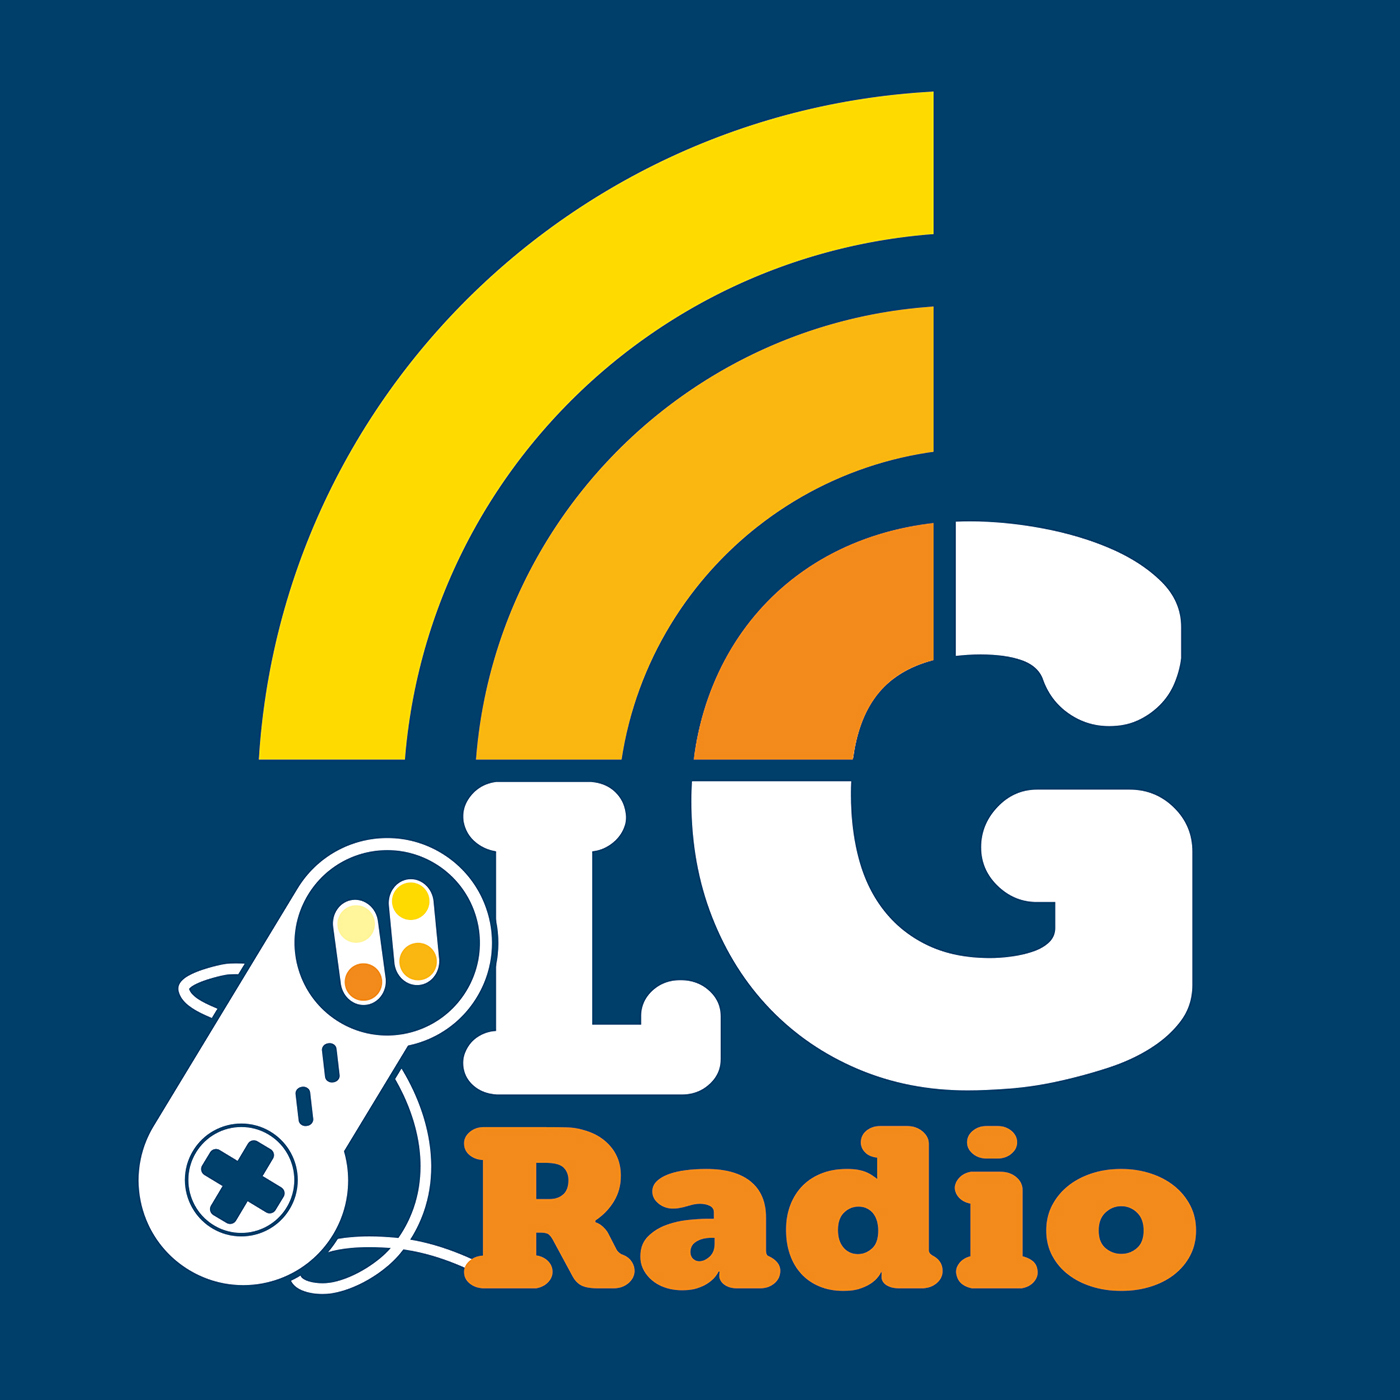 LGR: Episode 96 - Remix, Remake, Remodel